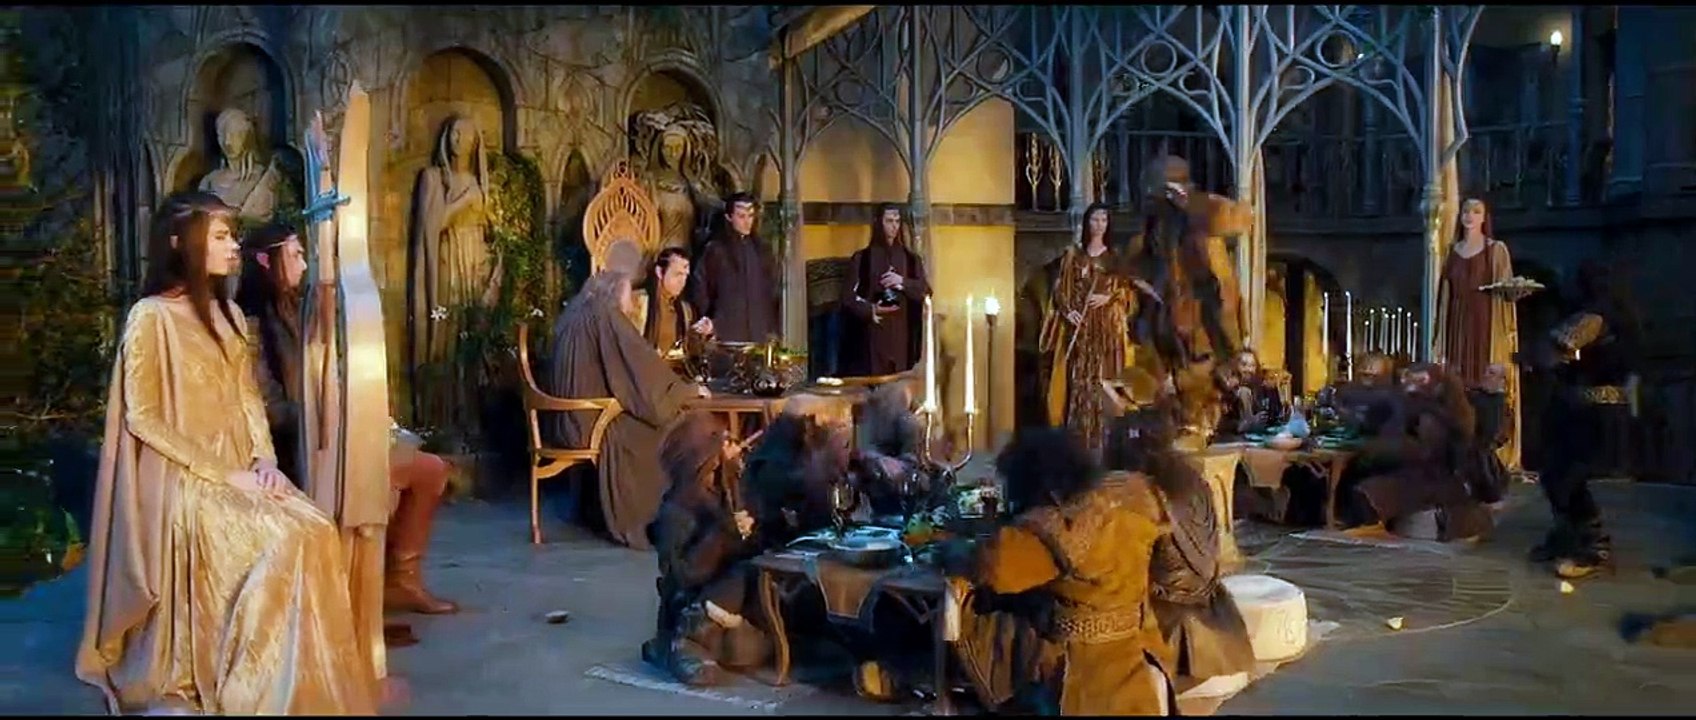 Der Hobbit: Eine unerwartete Reise Trailer (4) DF